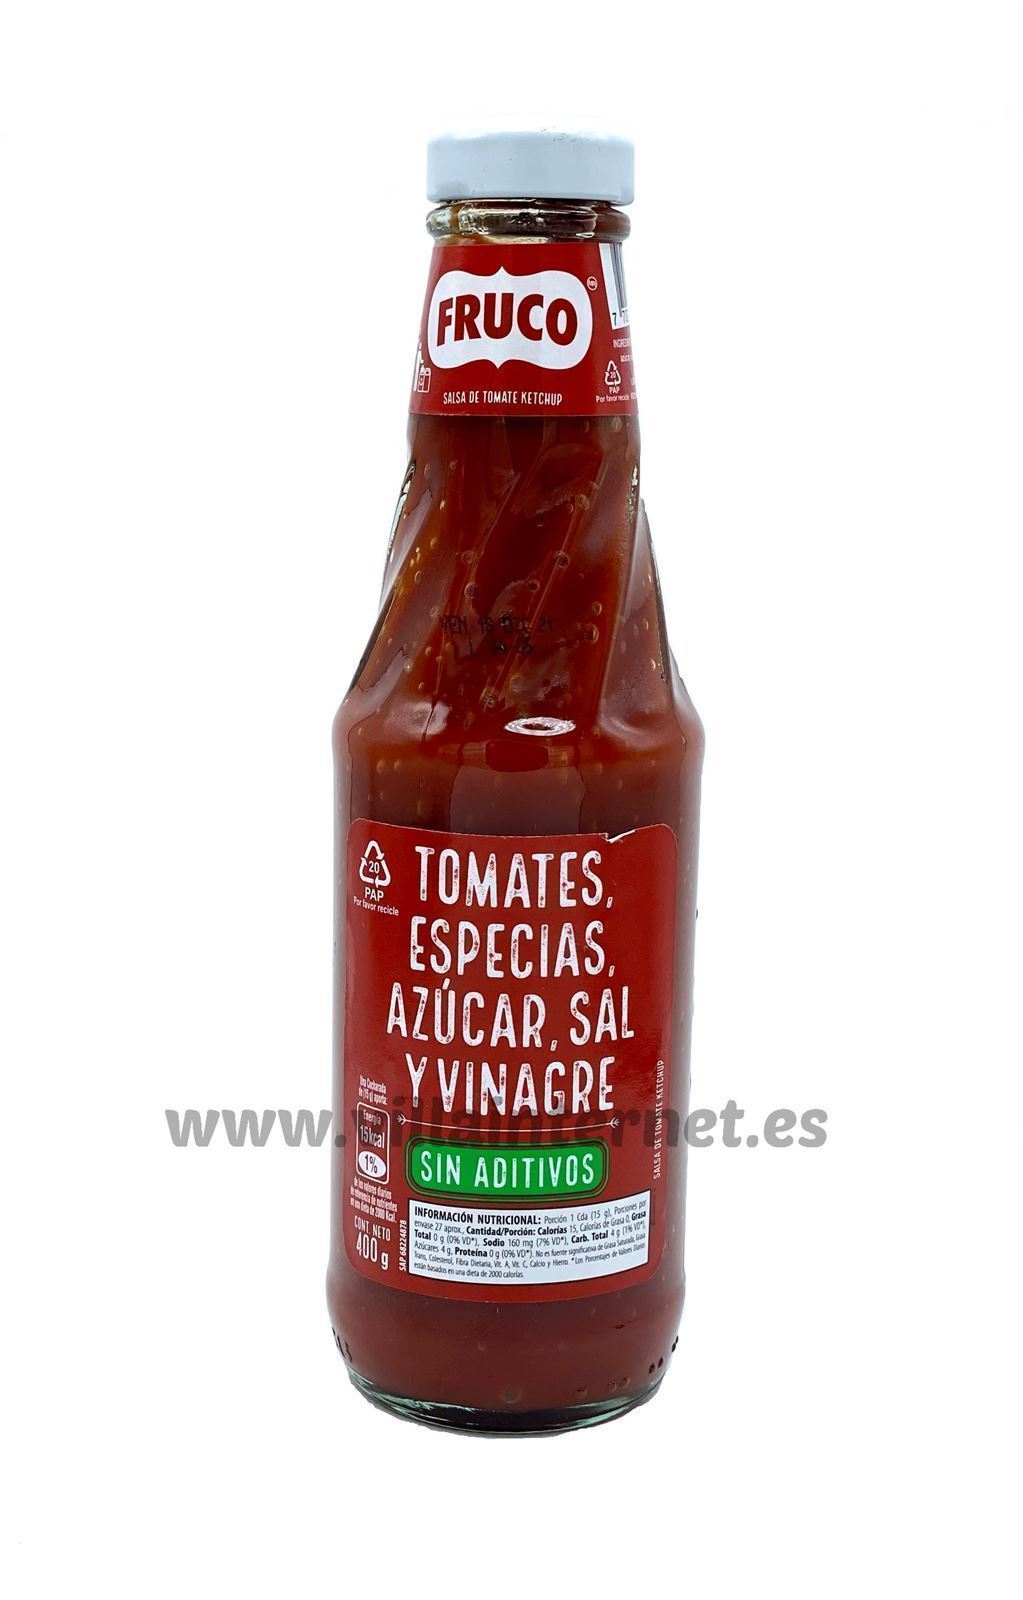 Salsa de tomate kétchup Fruco 400g - Imagen 1